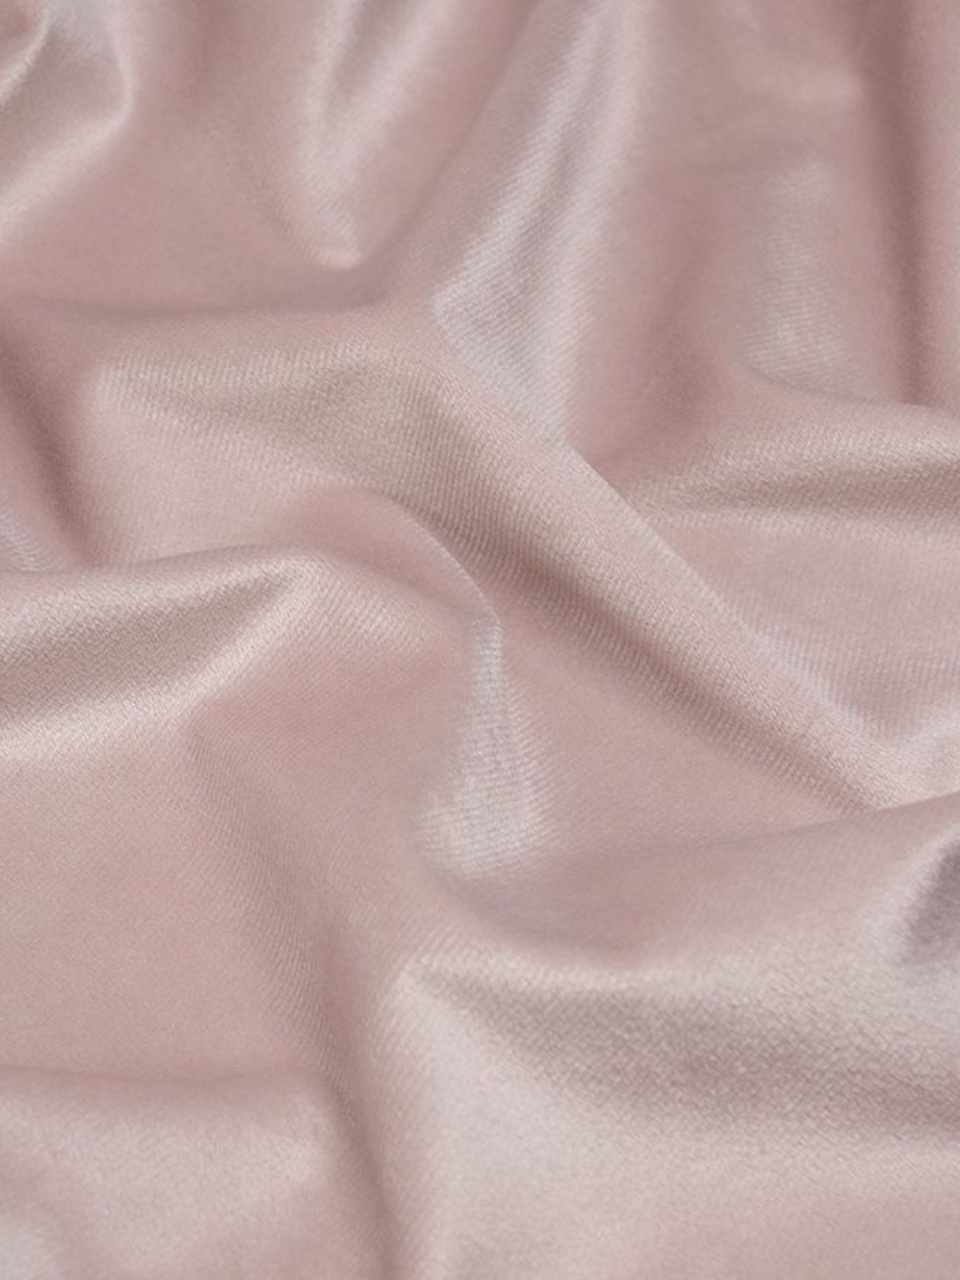 Портьеры Бархат нежно-розовый - 590 ₽, заказать онлайн.